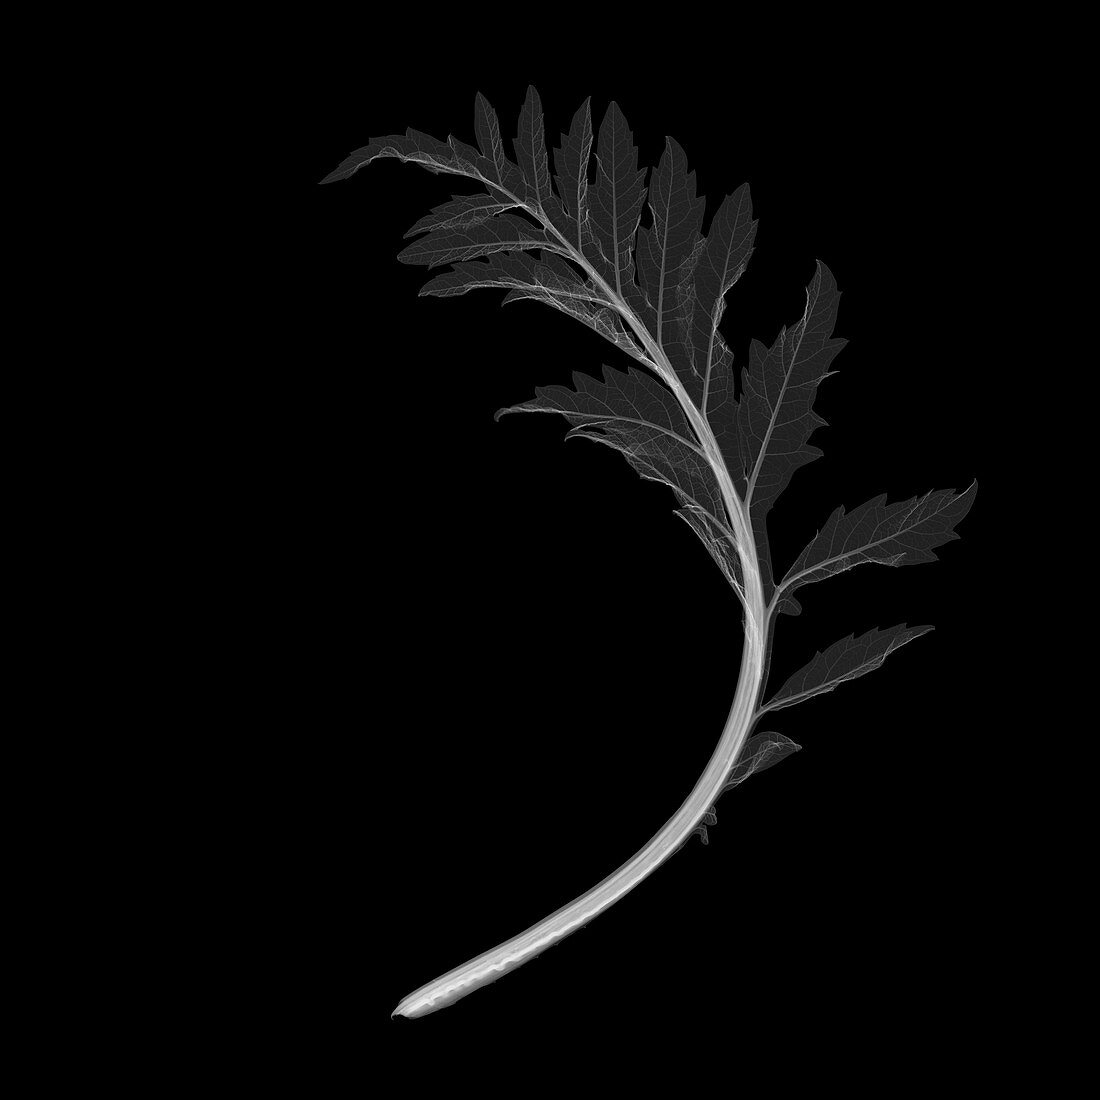 Artichoke leaf, X-ray